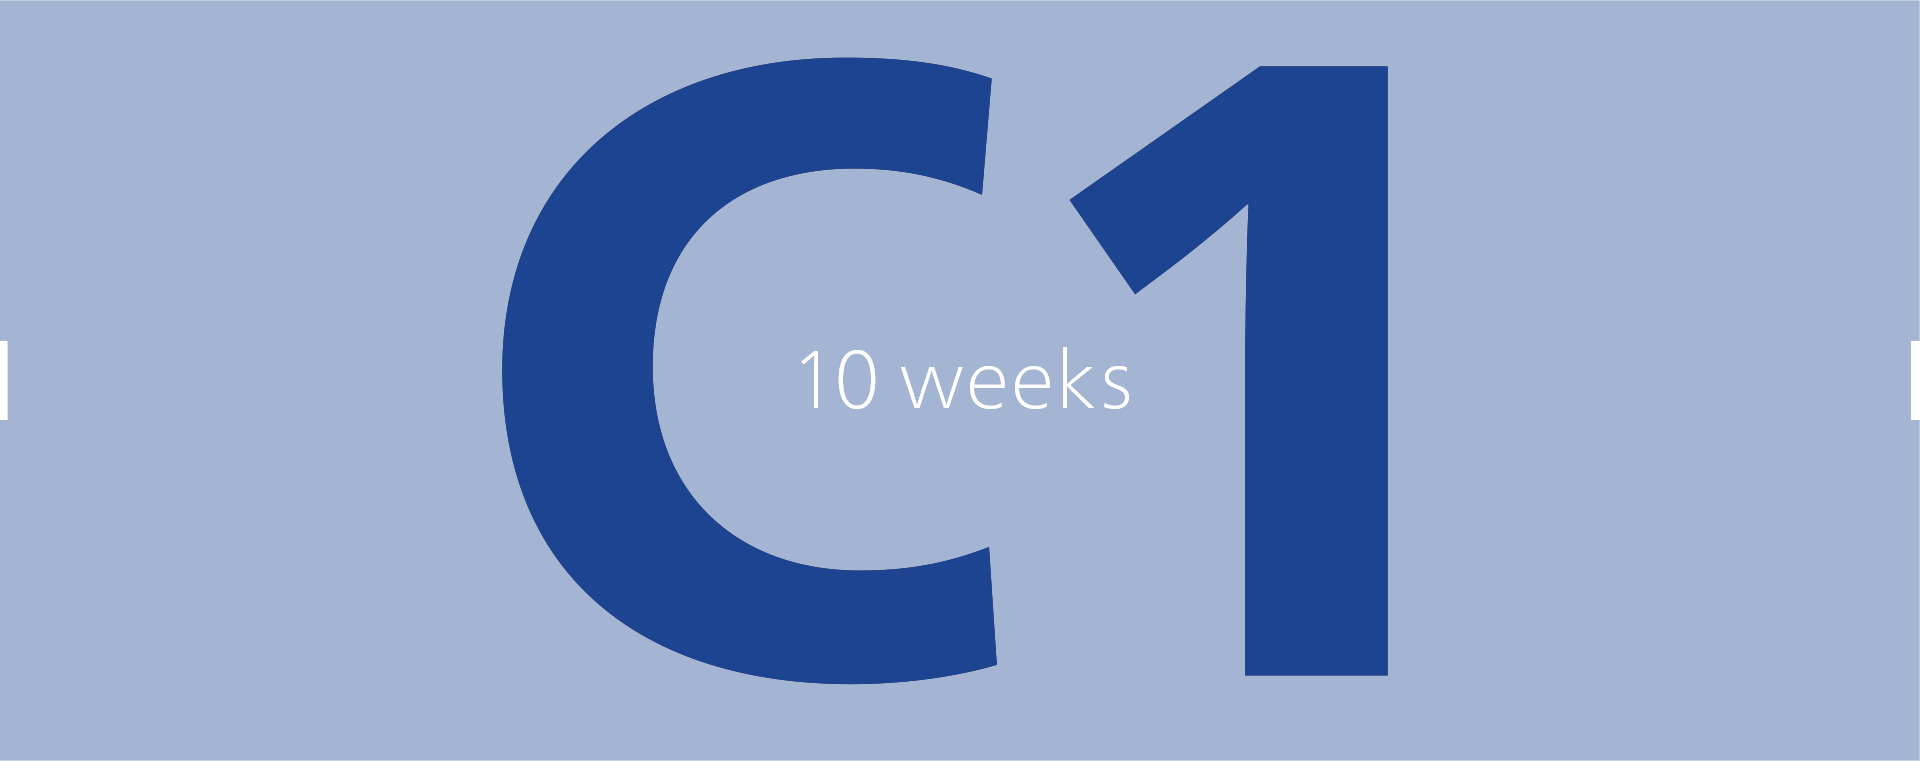 C1: 10 weeks